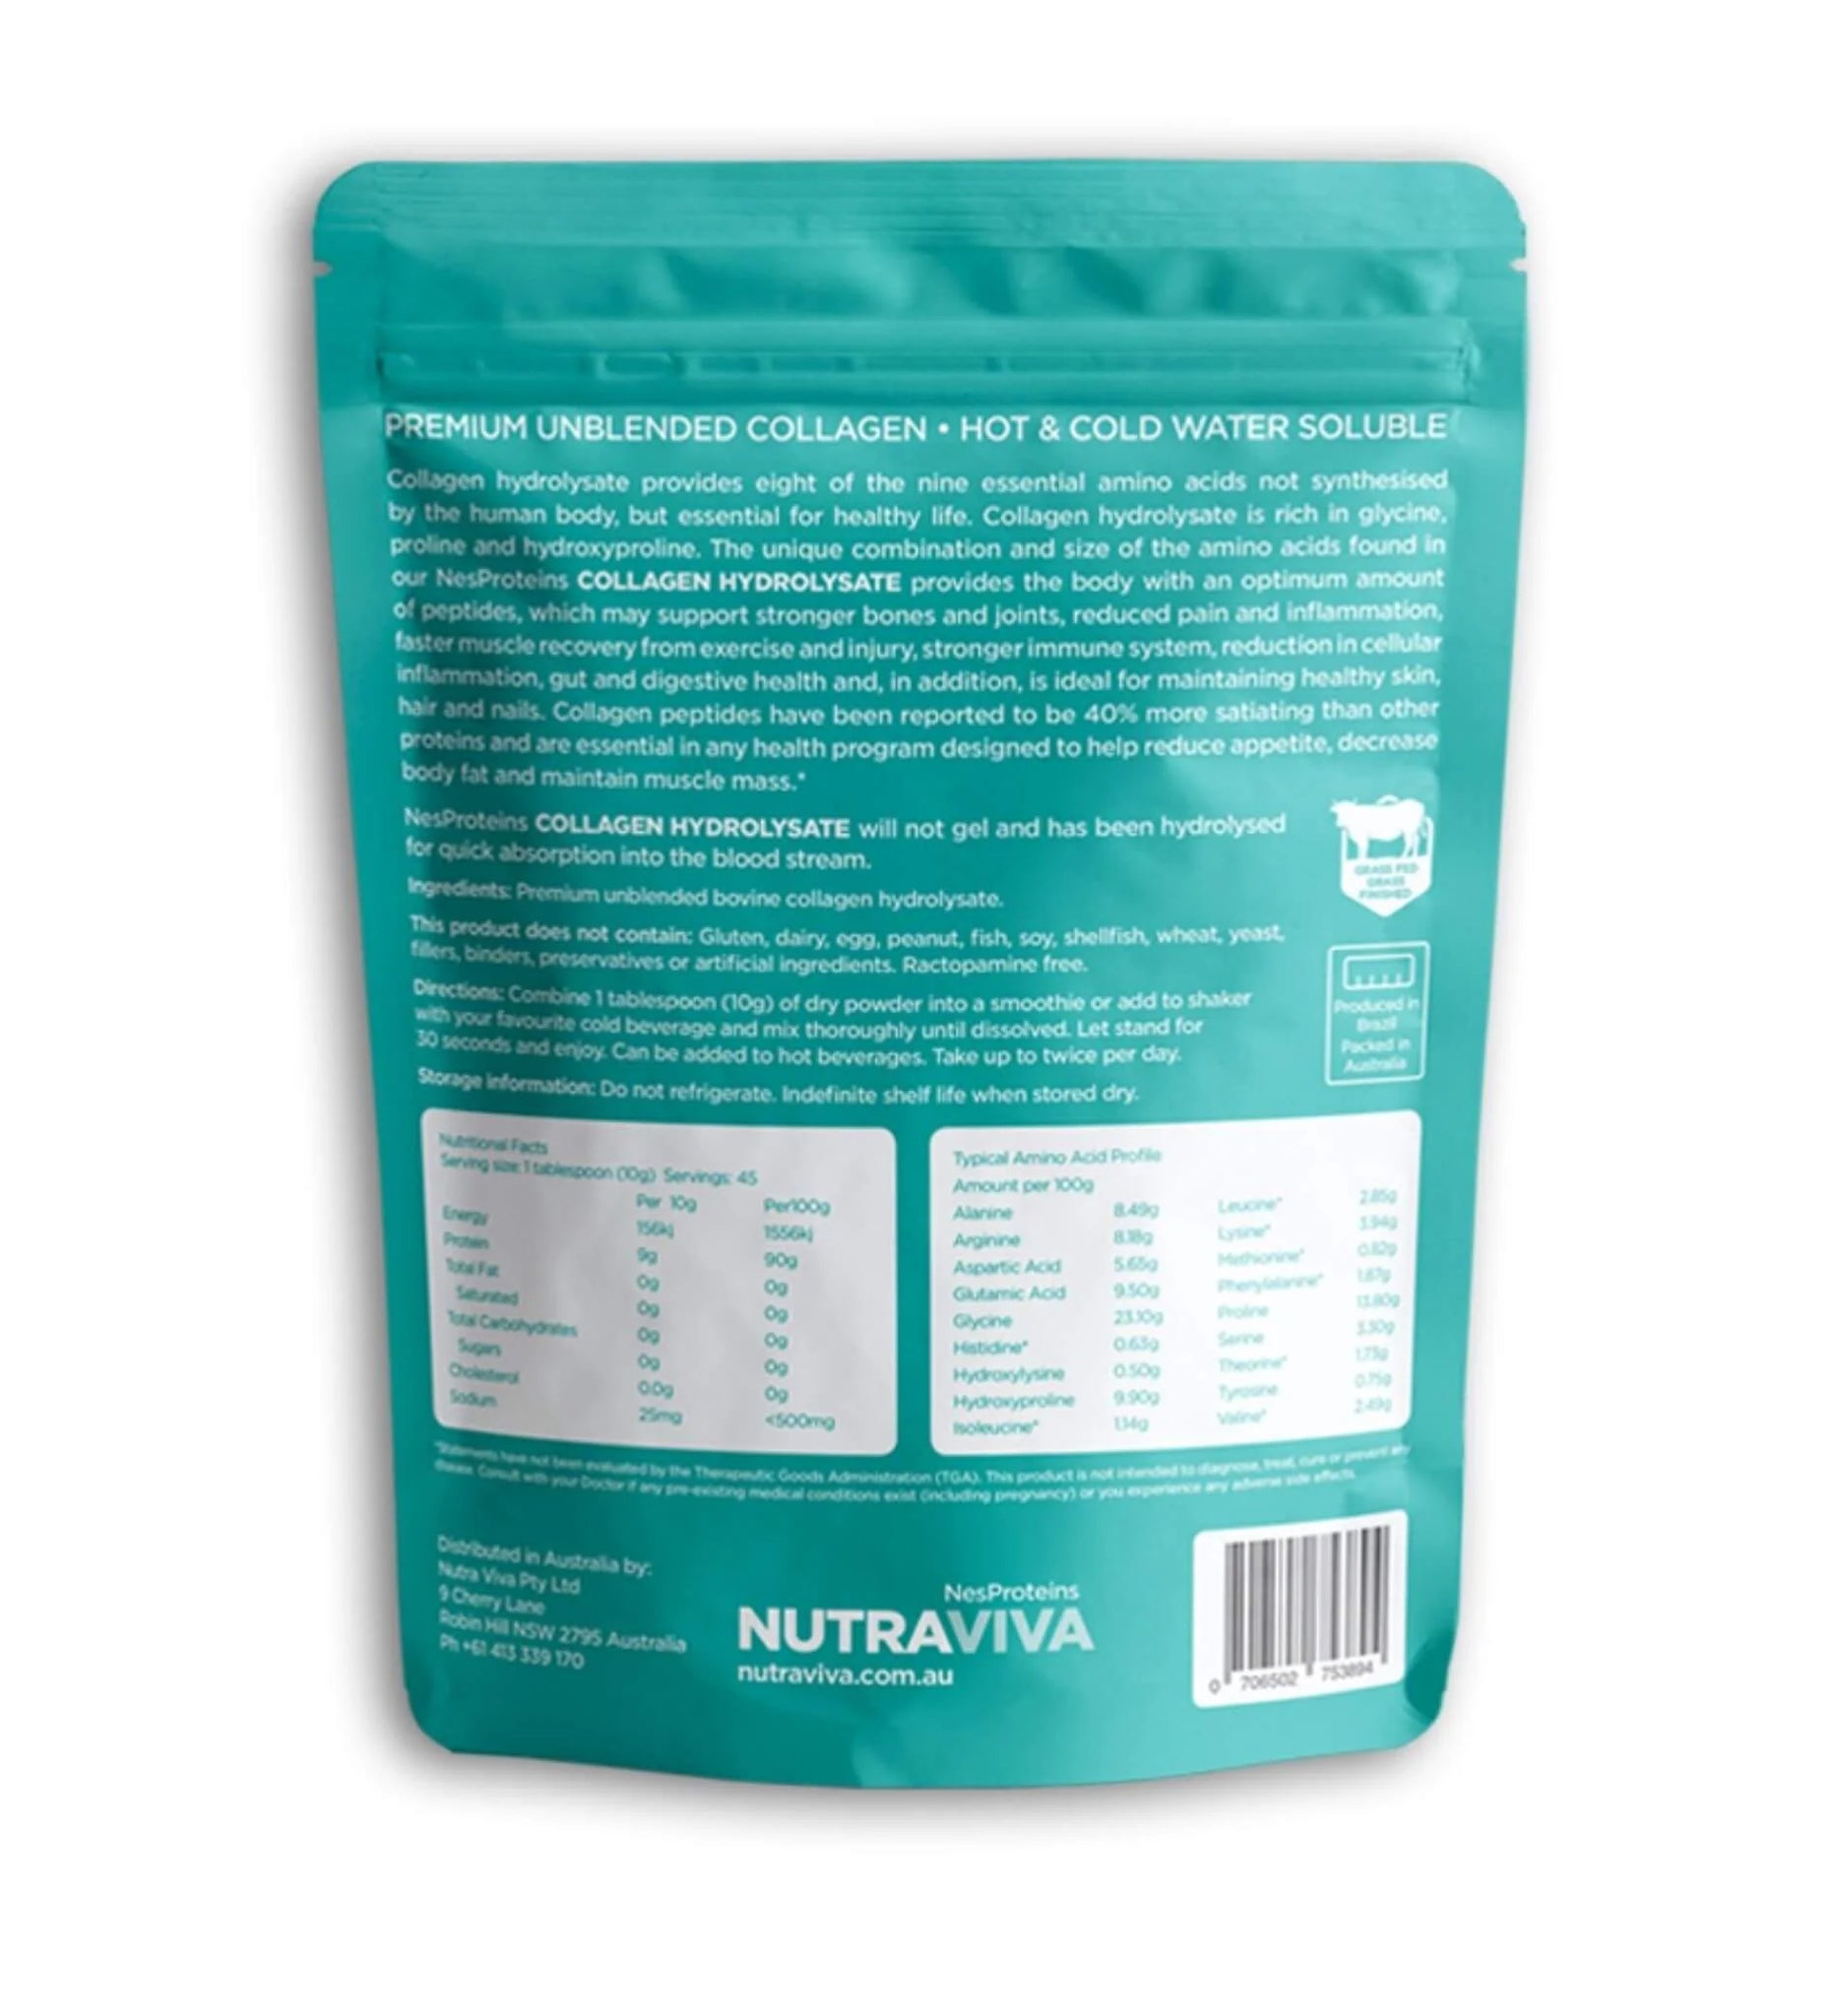 Nutraviva Nesproteins Hidrolisado de Colágeno Alimentado con Pasto Sin Sabor 450g